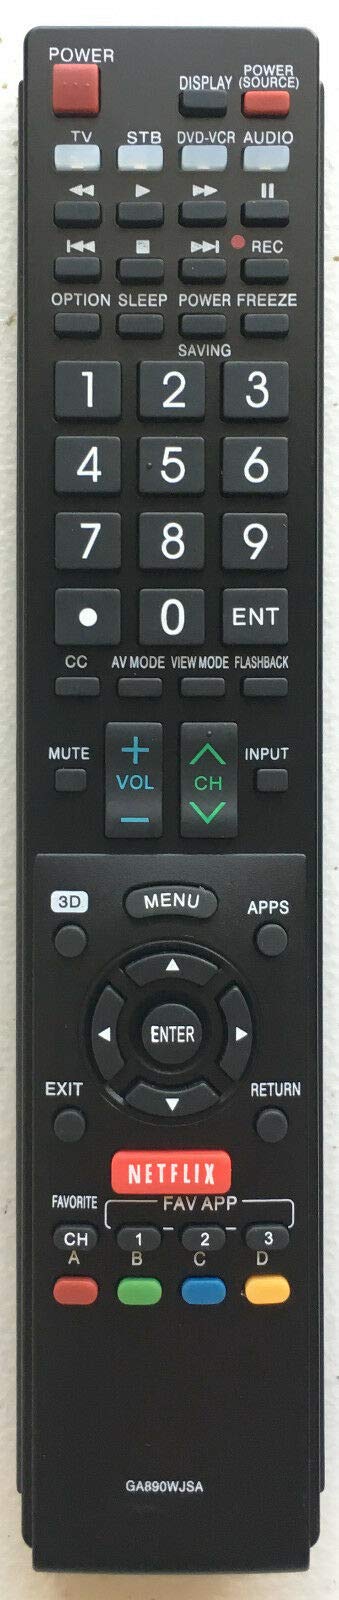 USBRMT New Sharp Replacement TV Remote GA890WJSA for Sharp AQUOS TV GB004WJSA GB005WJSA GB118WJSA GA935WJSA GB105WJSA